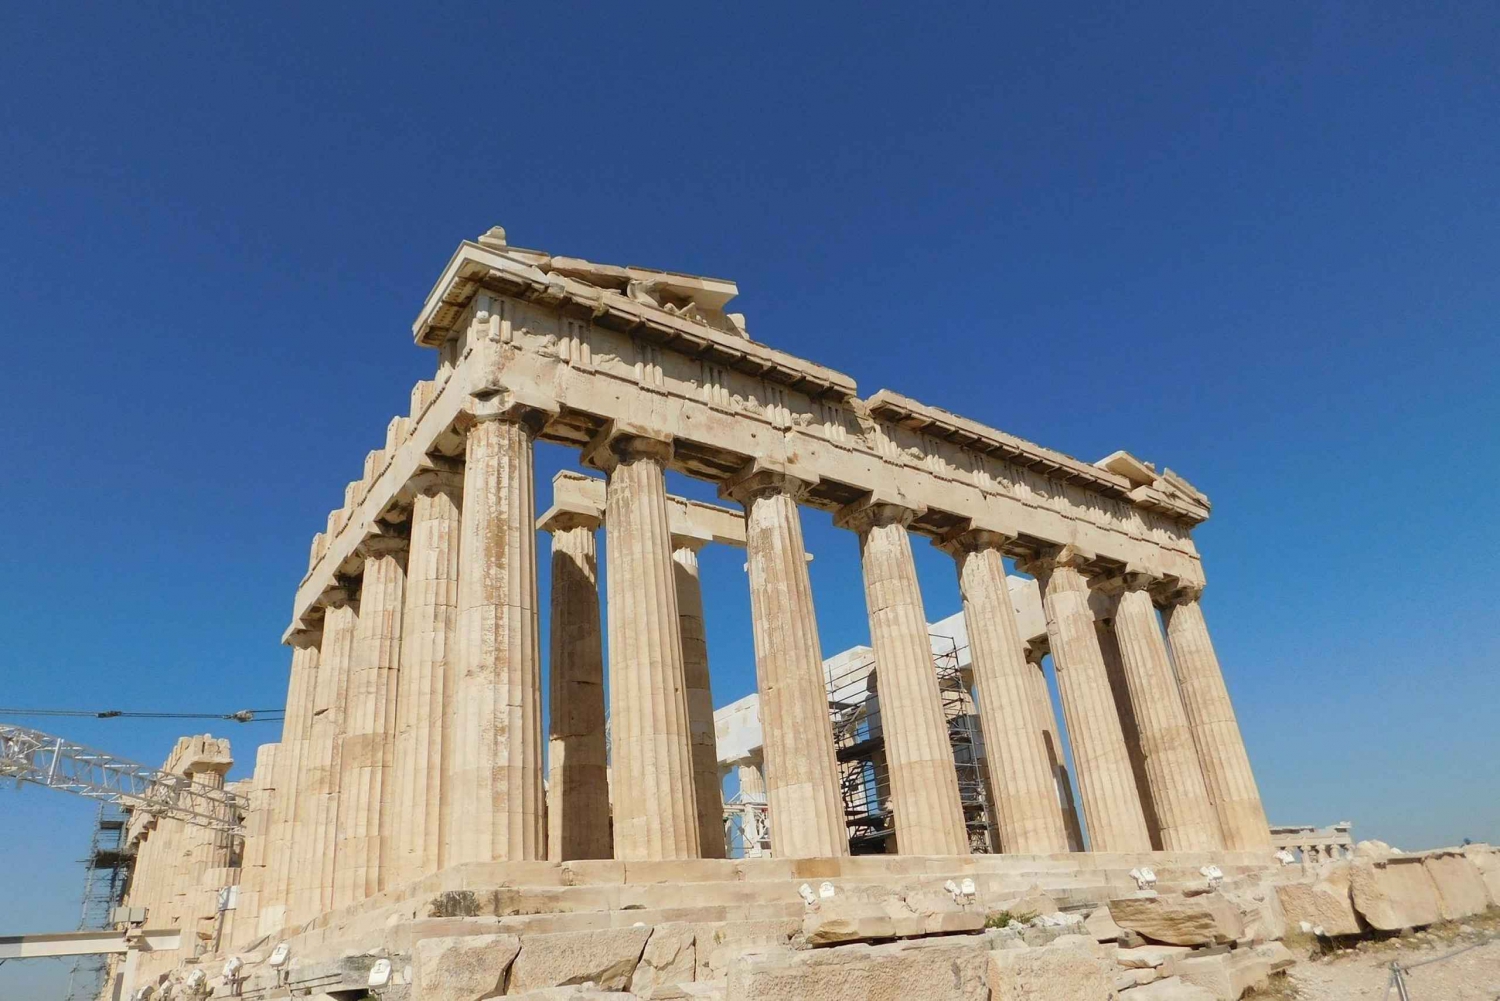 Aten: Digital City Tour med över 100 sevärdheter att se